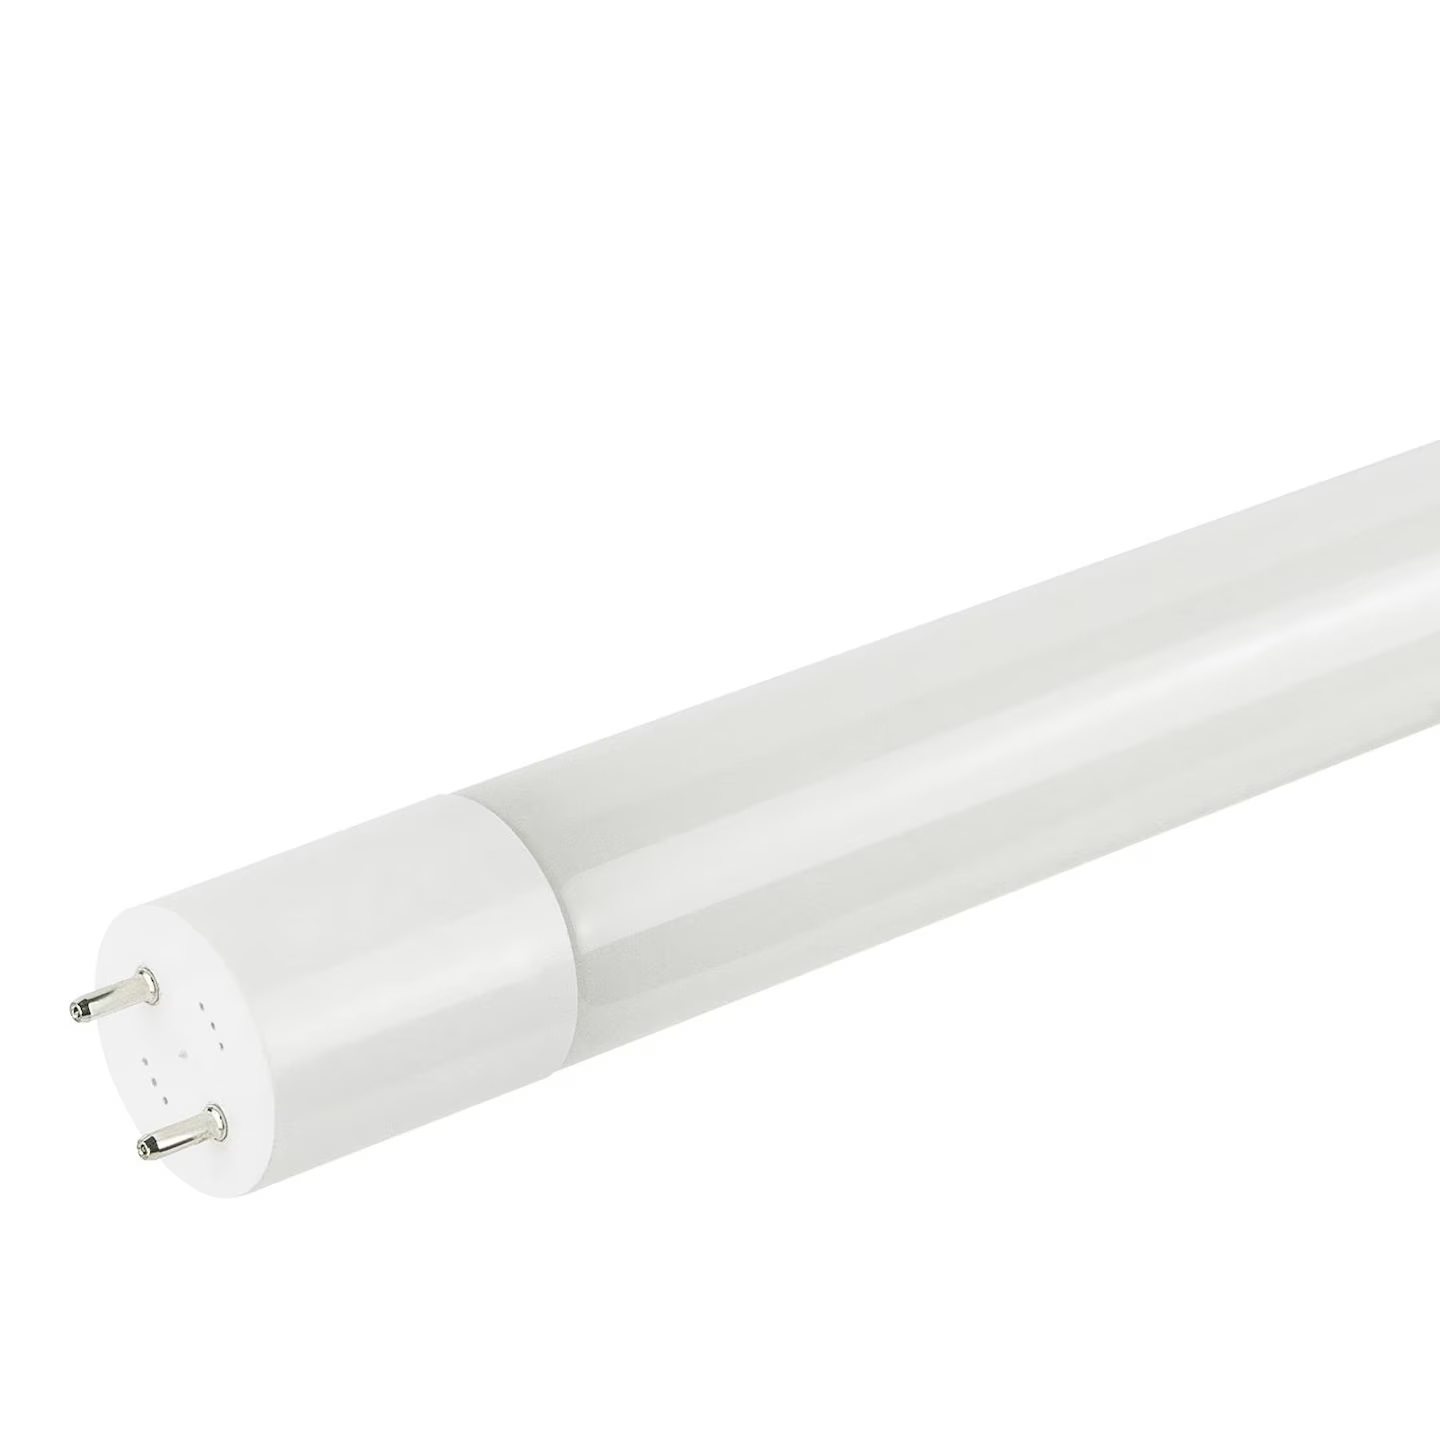 LED Tube Light T8 T10 T12 Free Shipping – LightingWill